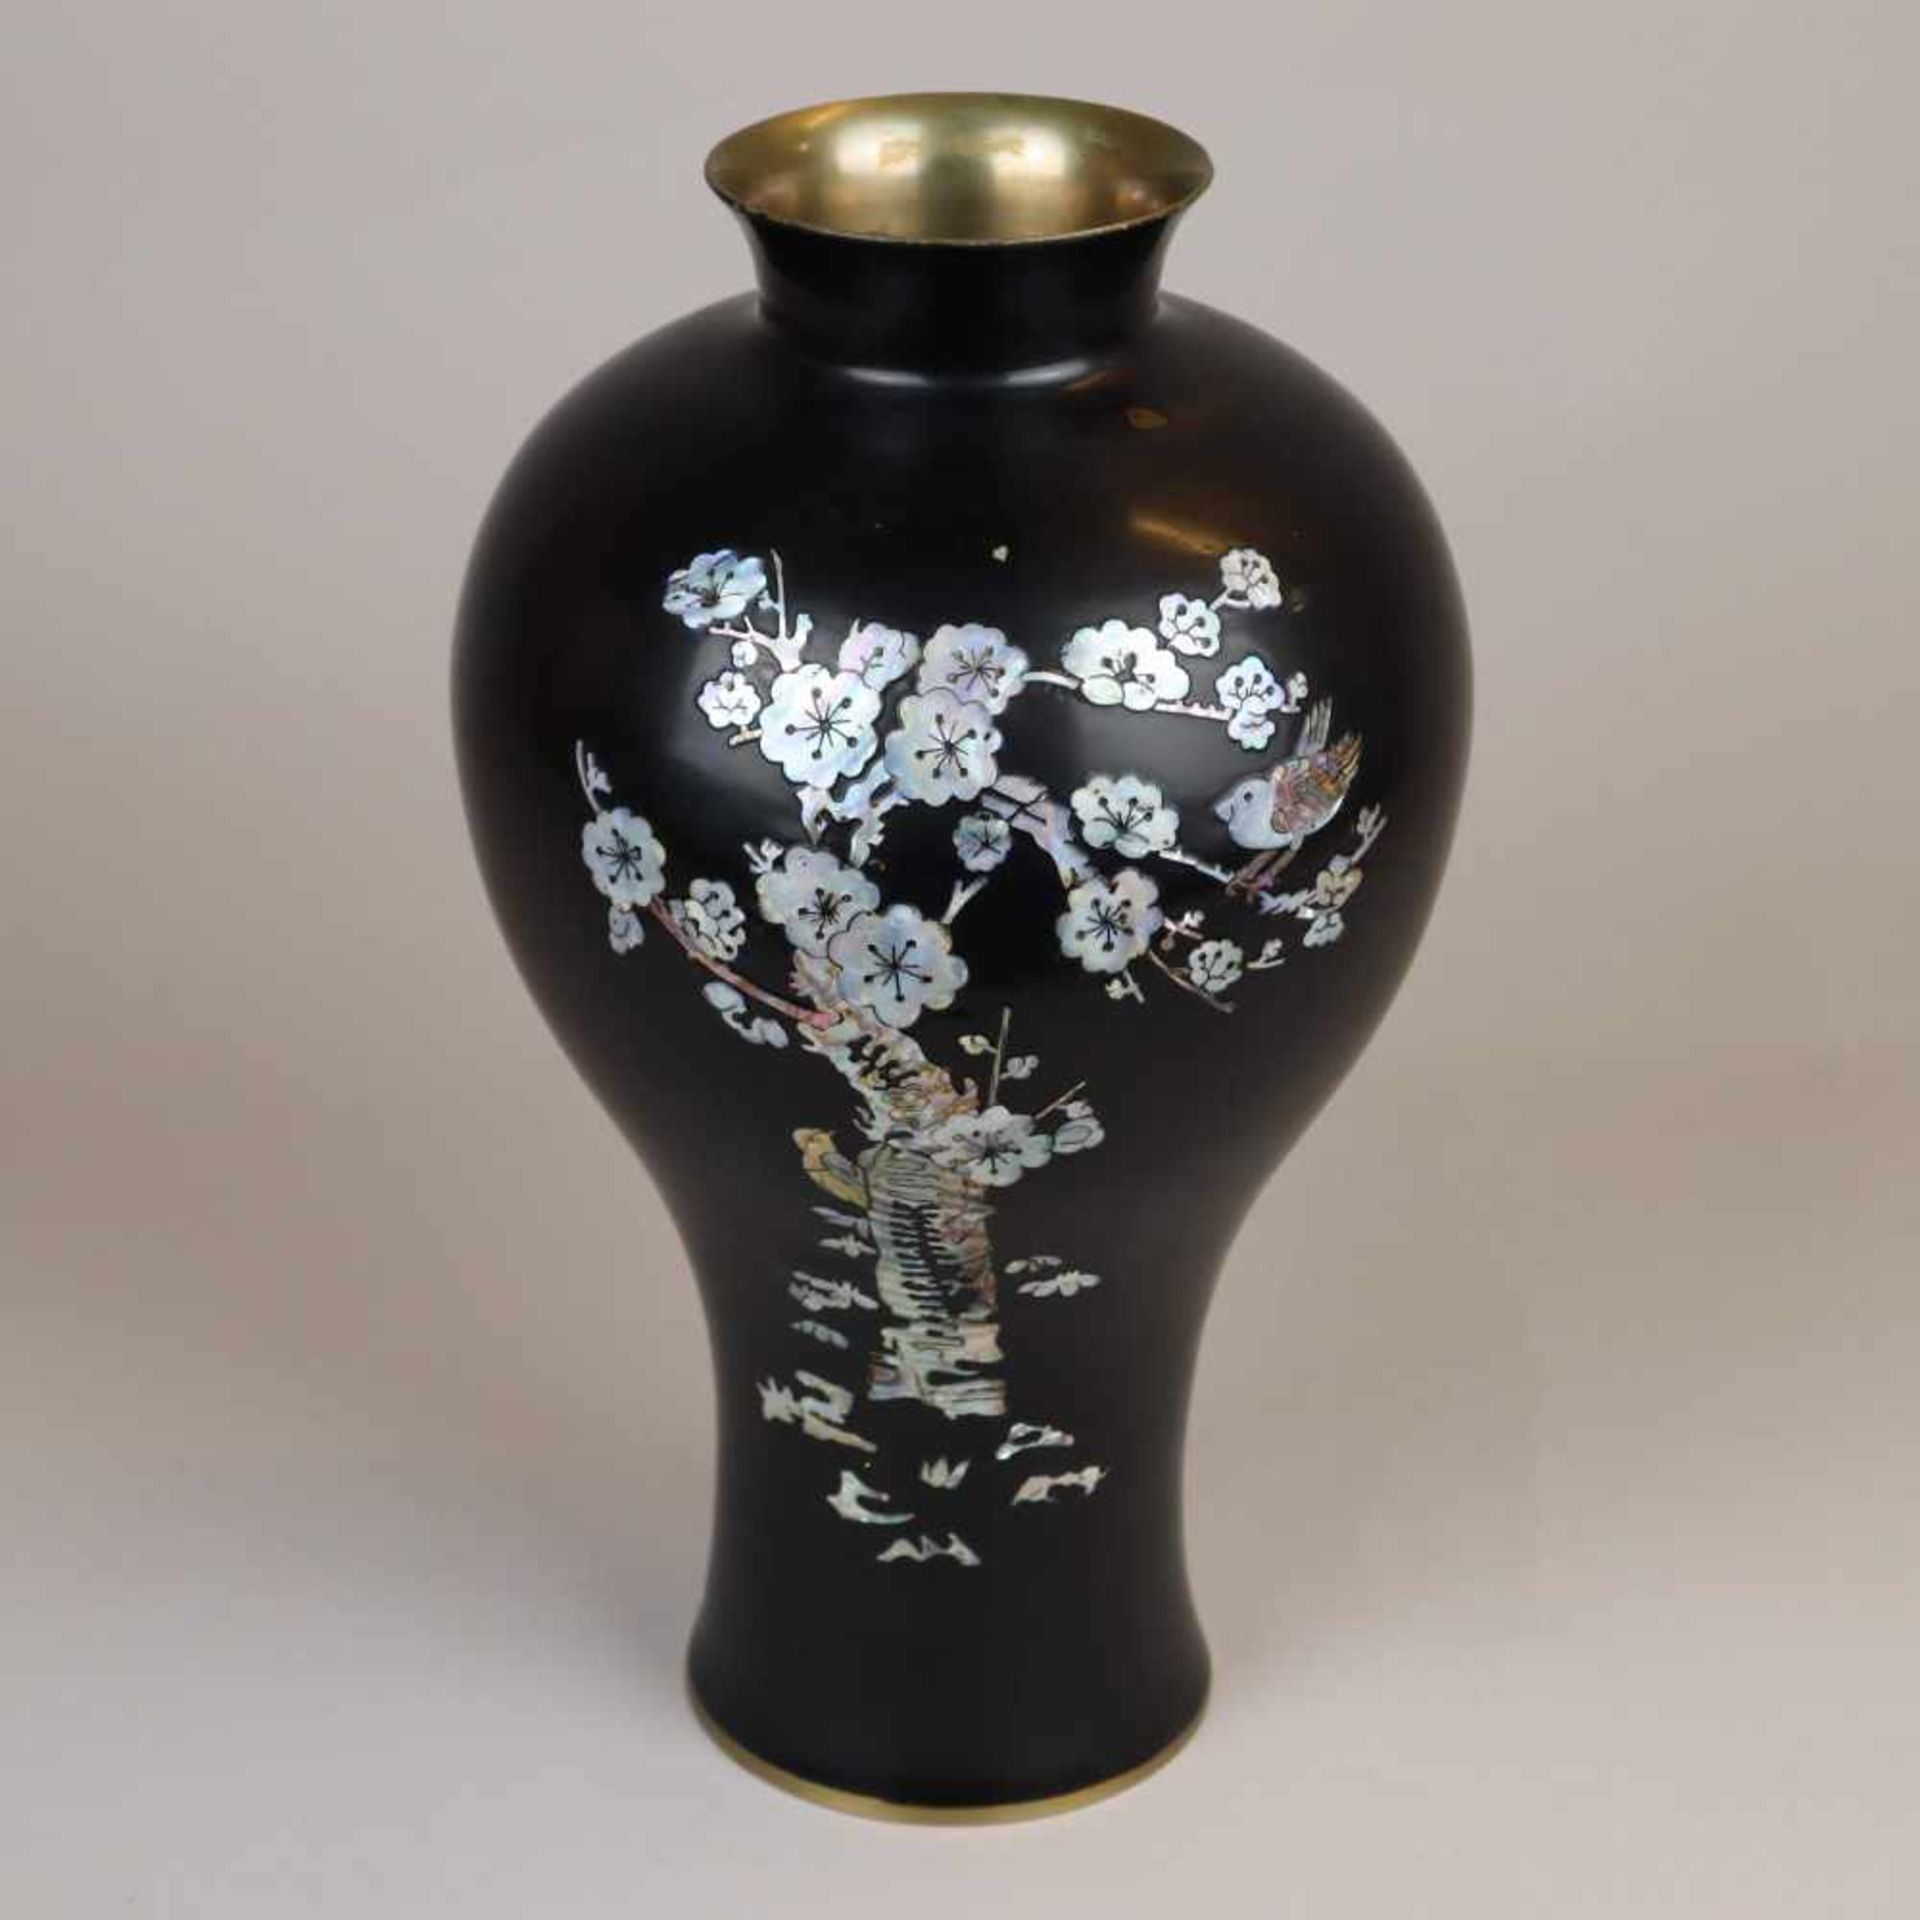 Vase mit Perlmuttintarsien- Meipingform mit langem Hals und ausschwingendem Mündungsrand. Messing